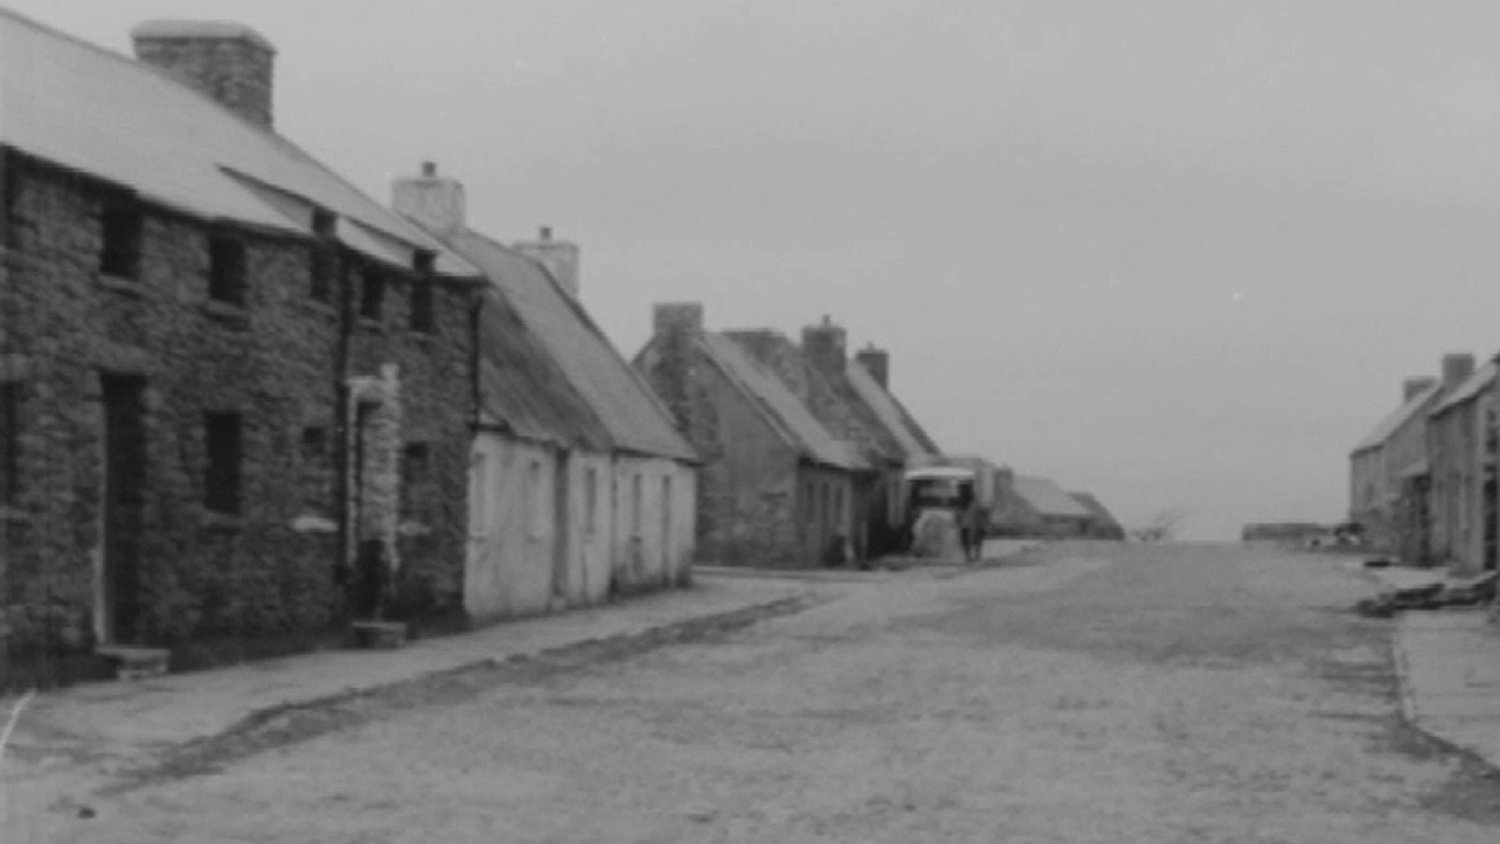 The Village (1969) - A village in Ireland 2